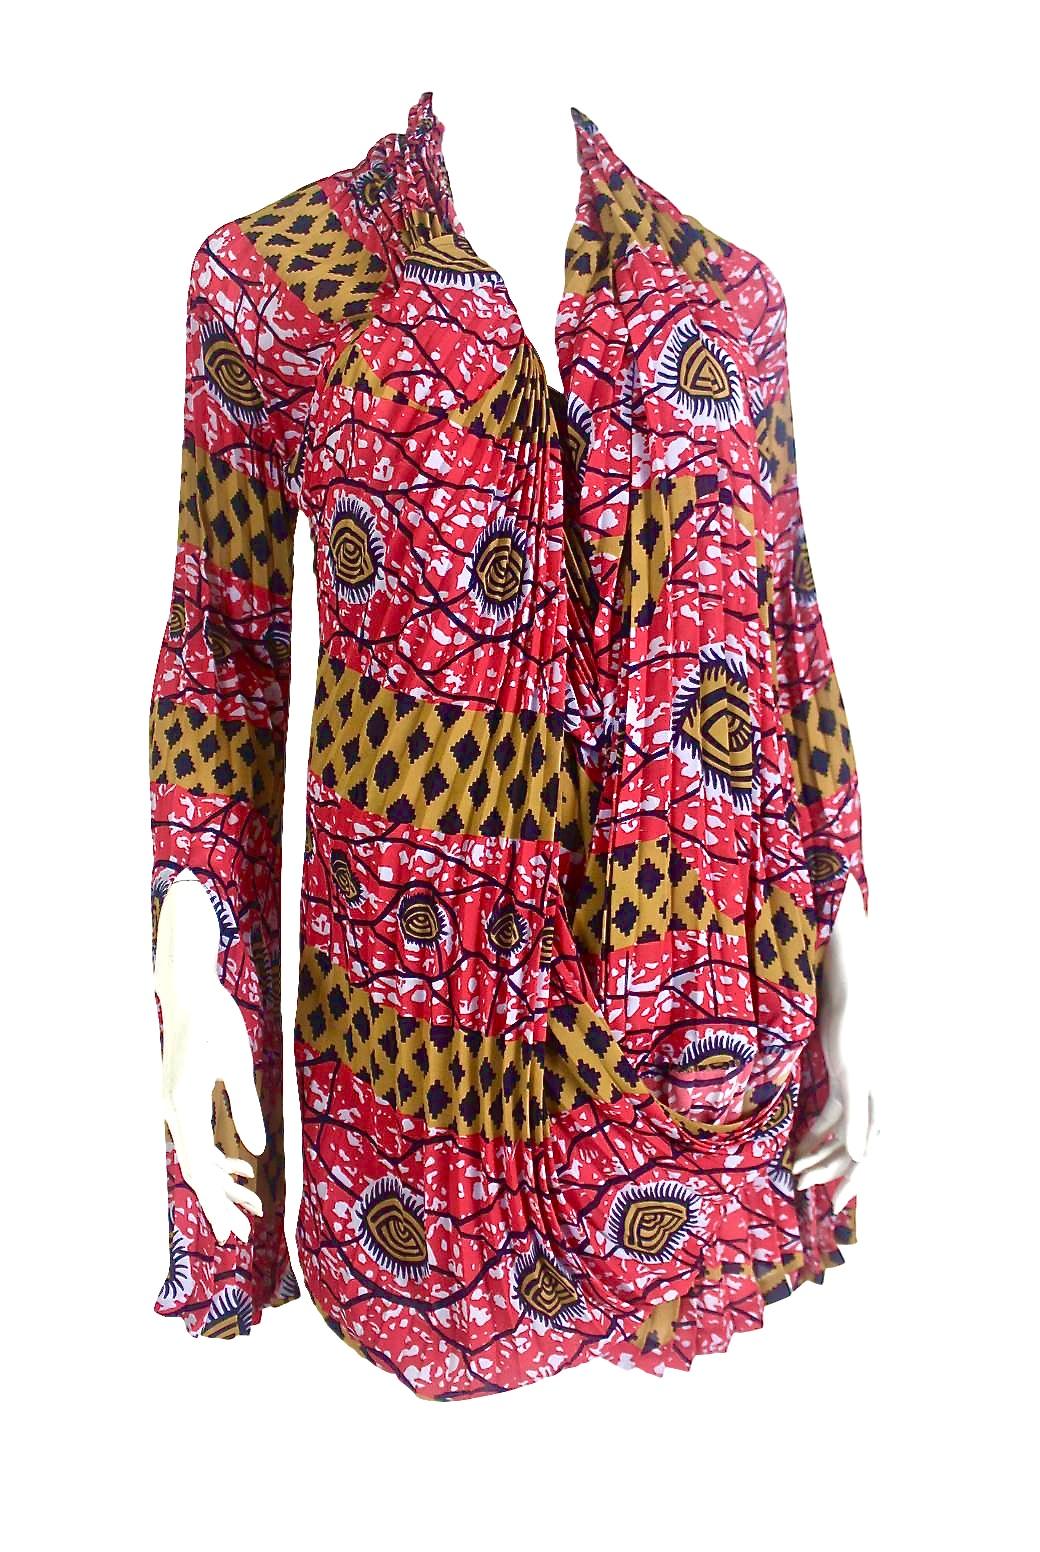 Comme des Garçons Junya Watanabe African Open Back Print Dress AD 2009 For Sale 7